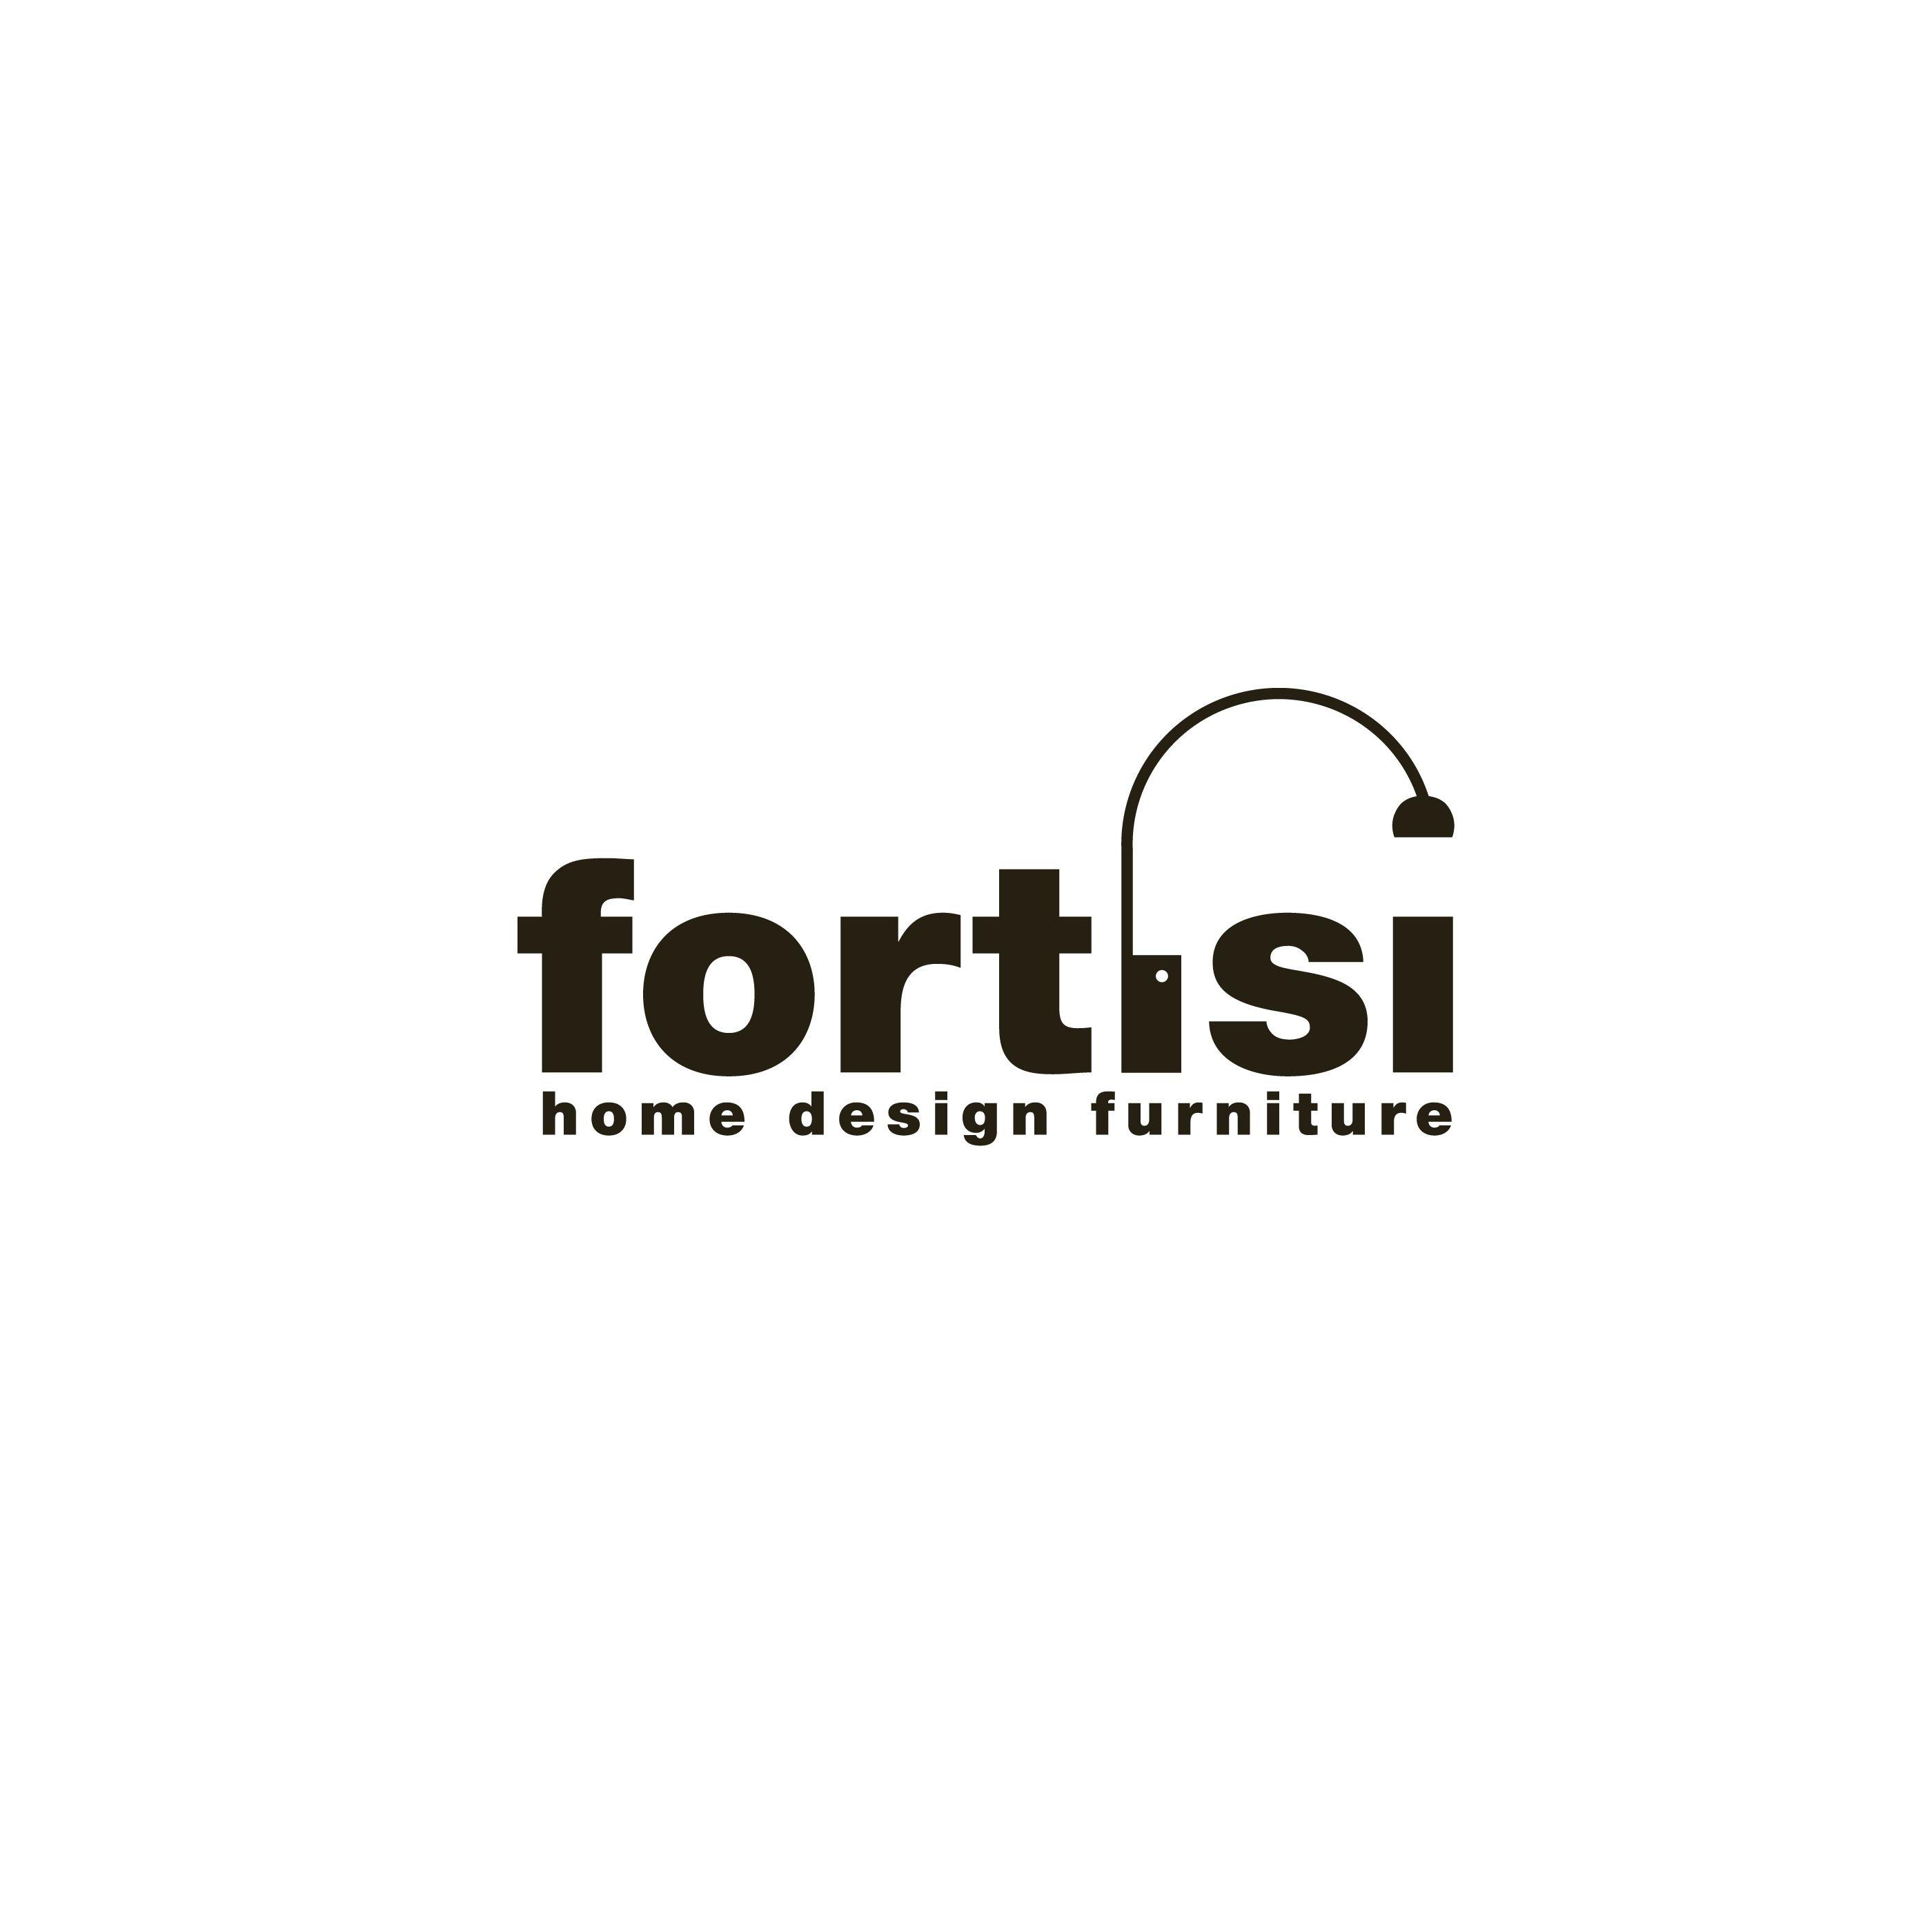 Type Logo - Type Logo for Design Furniture Store Pagani